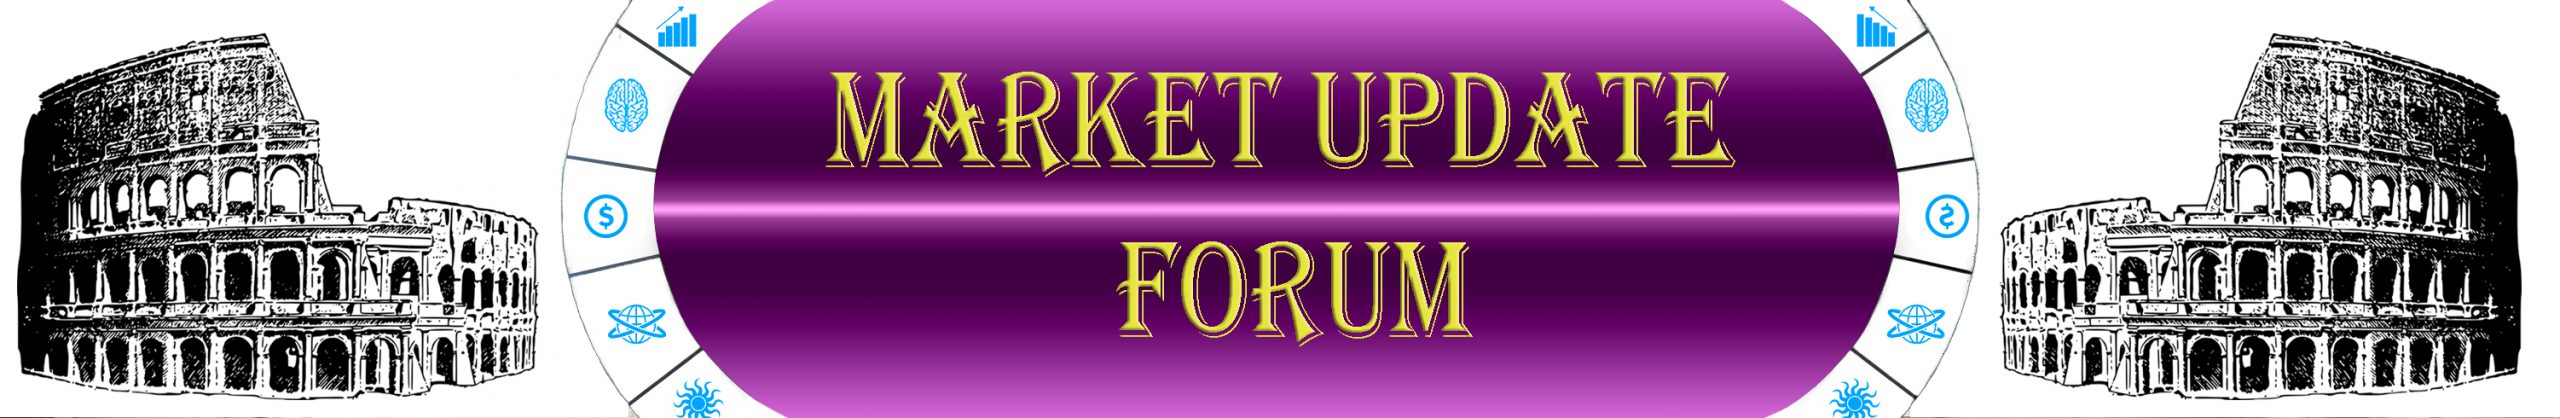 Market update forum